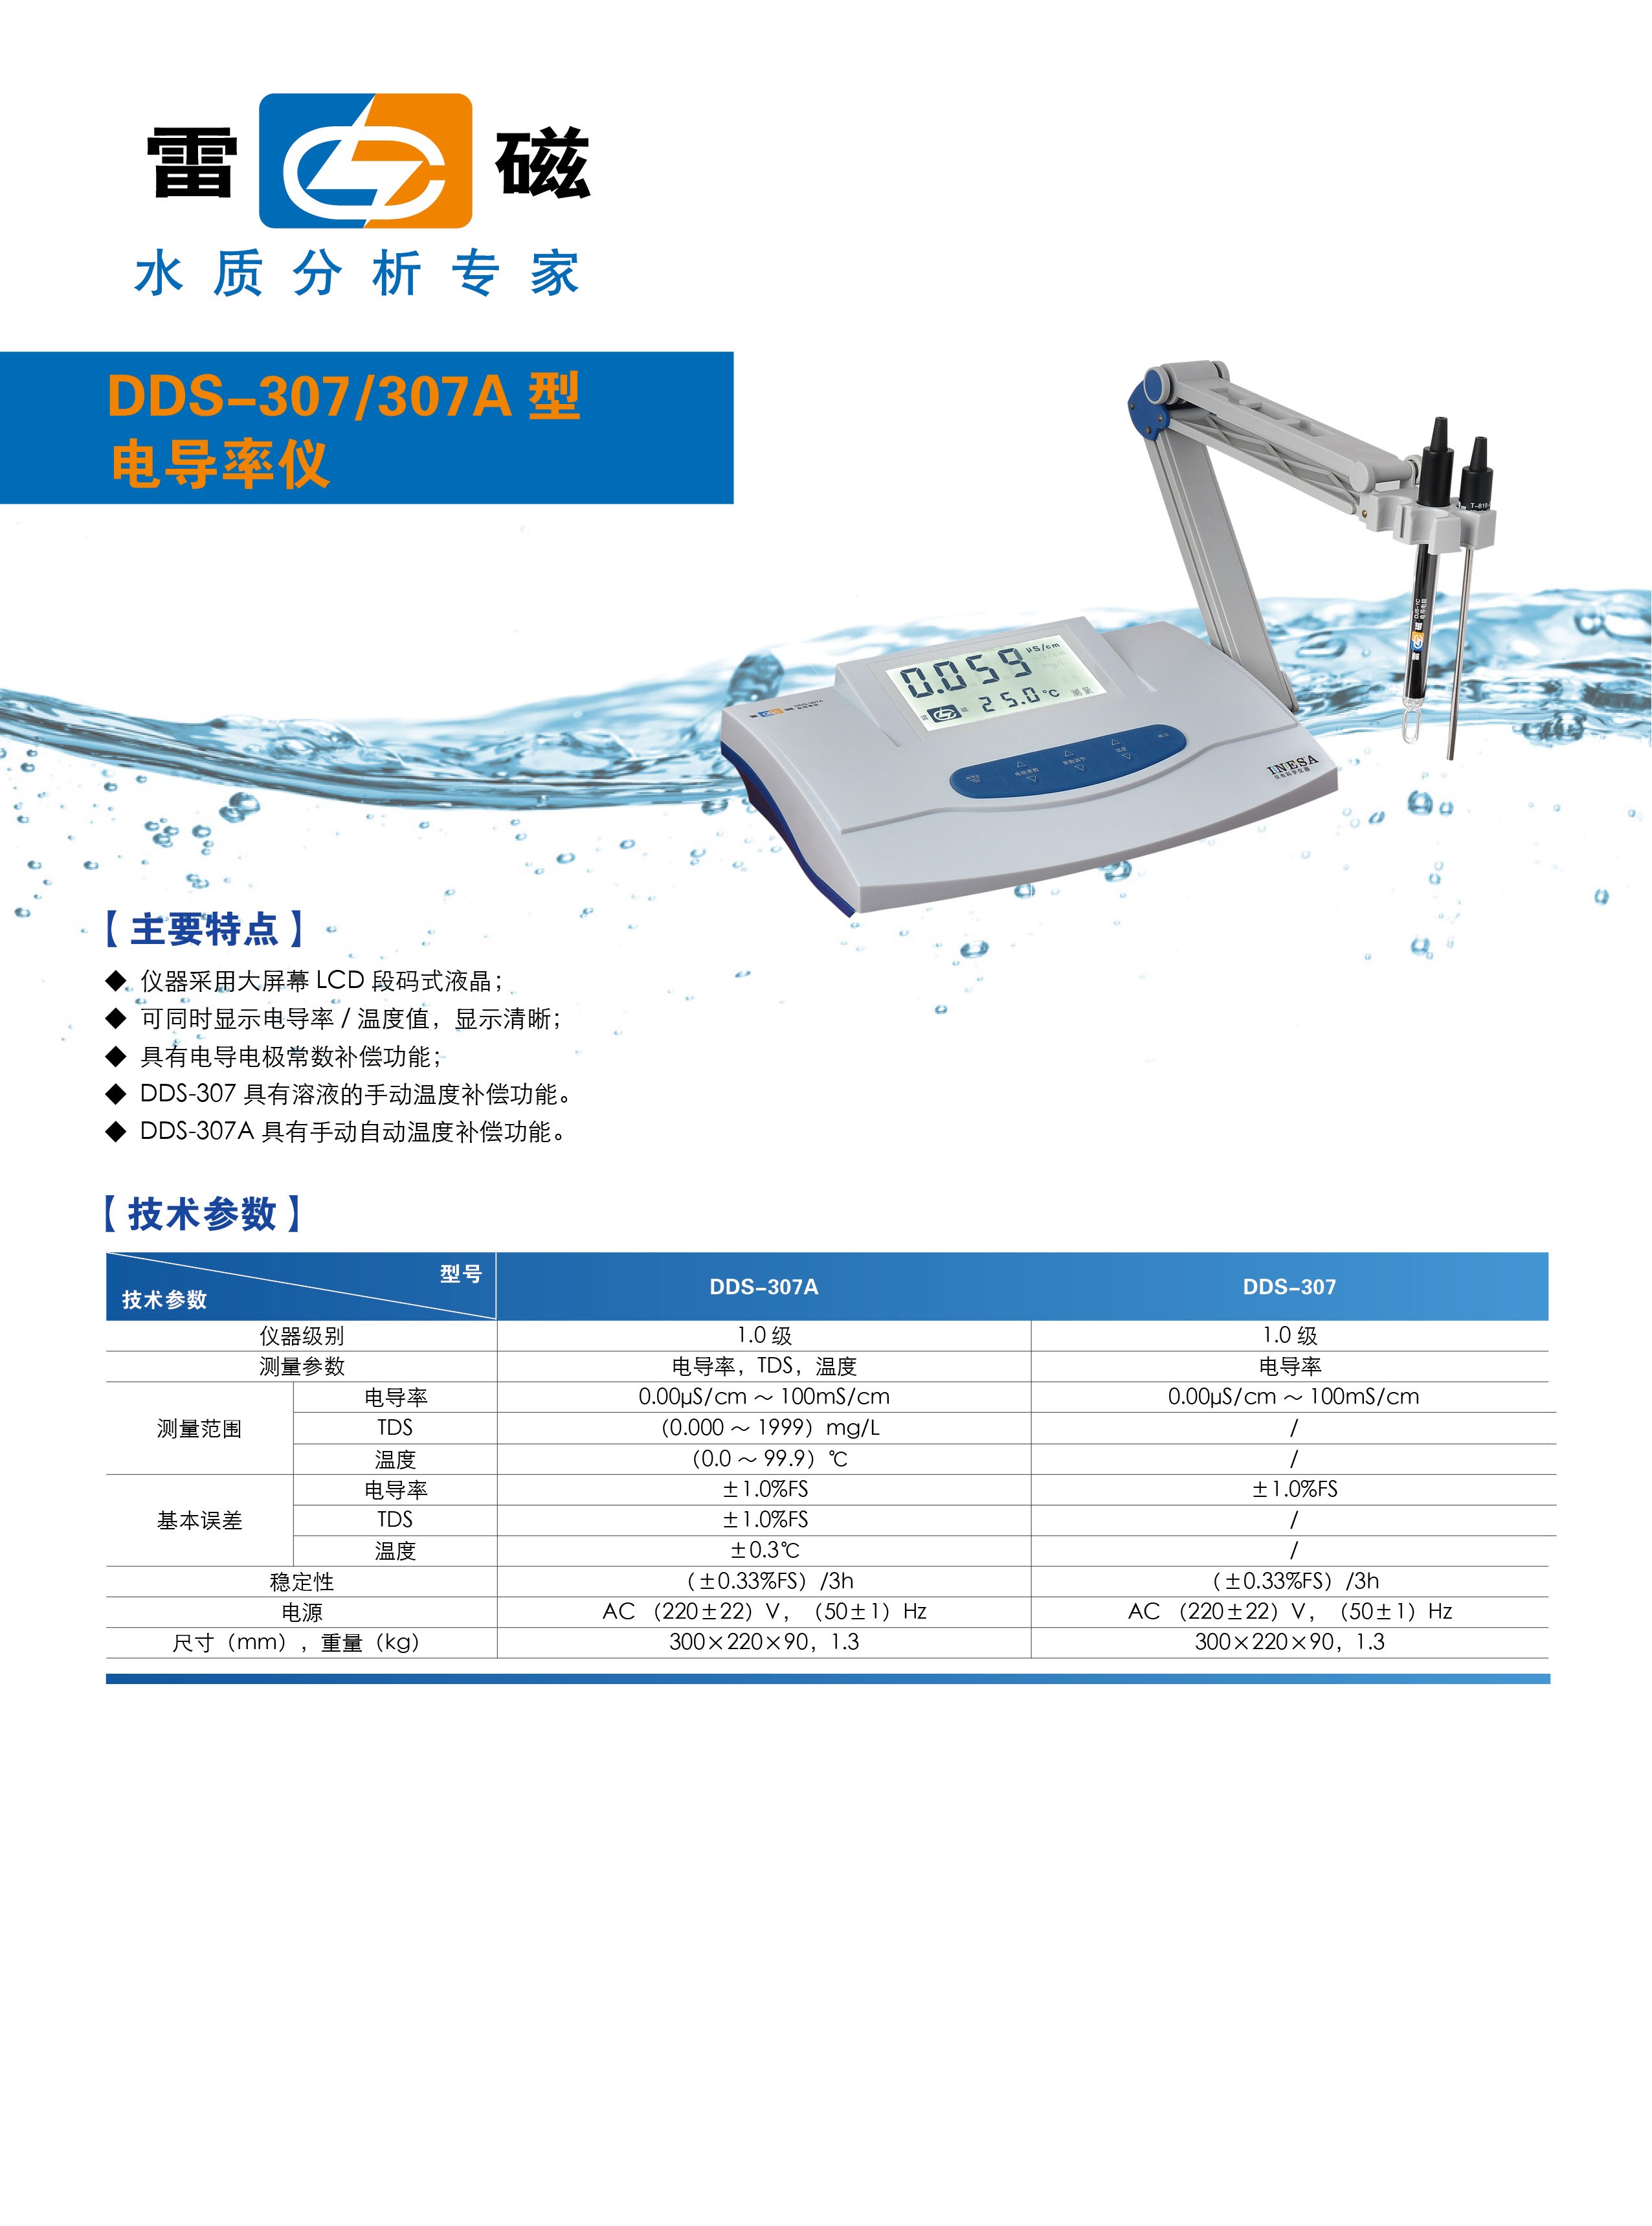 DDS-307A307型电导率仪1540260511732_conew1.jpg